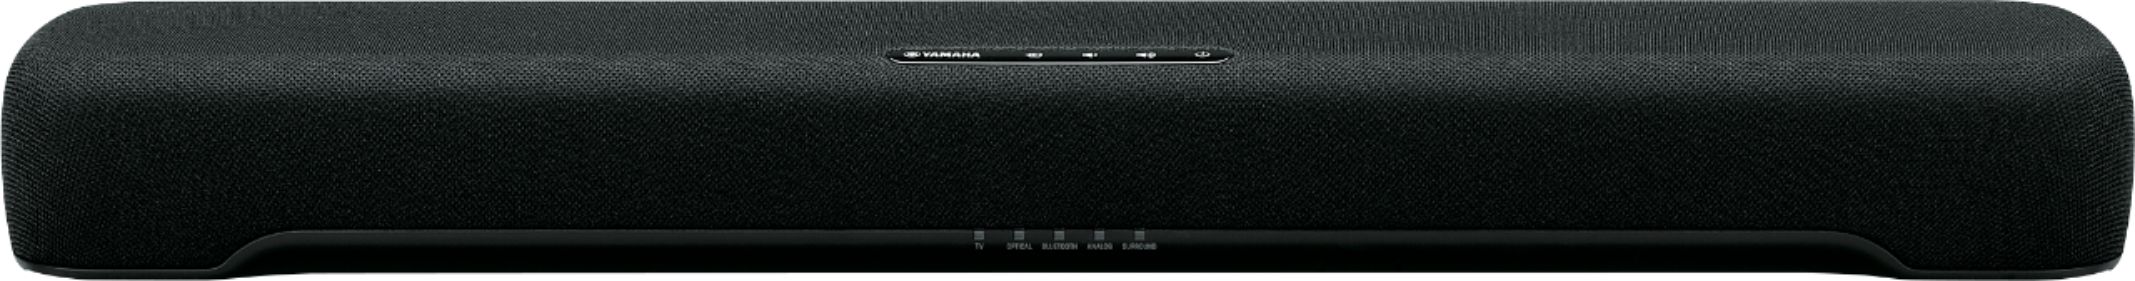 Yamaha 2.1-Channel Soundbar with Built-in Subwoofer Black SR 